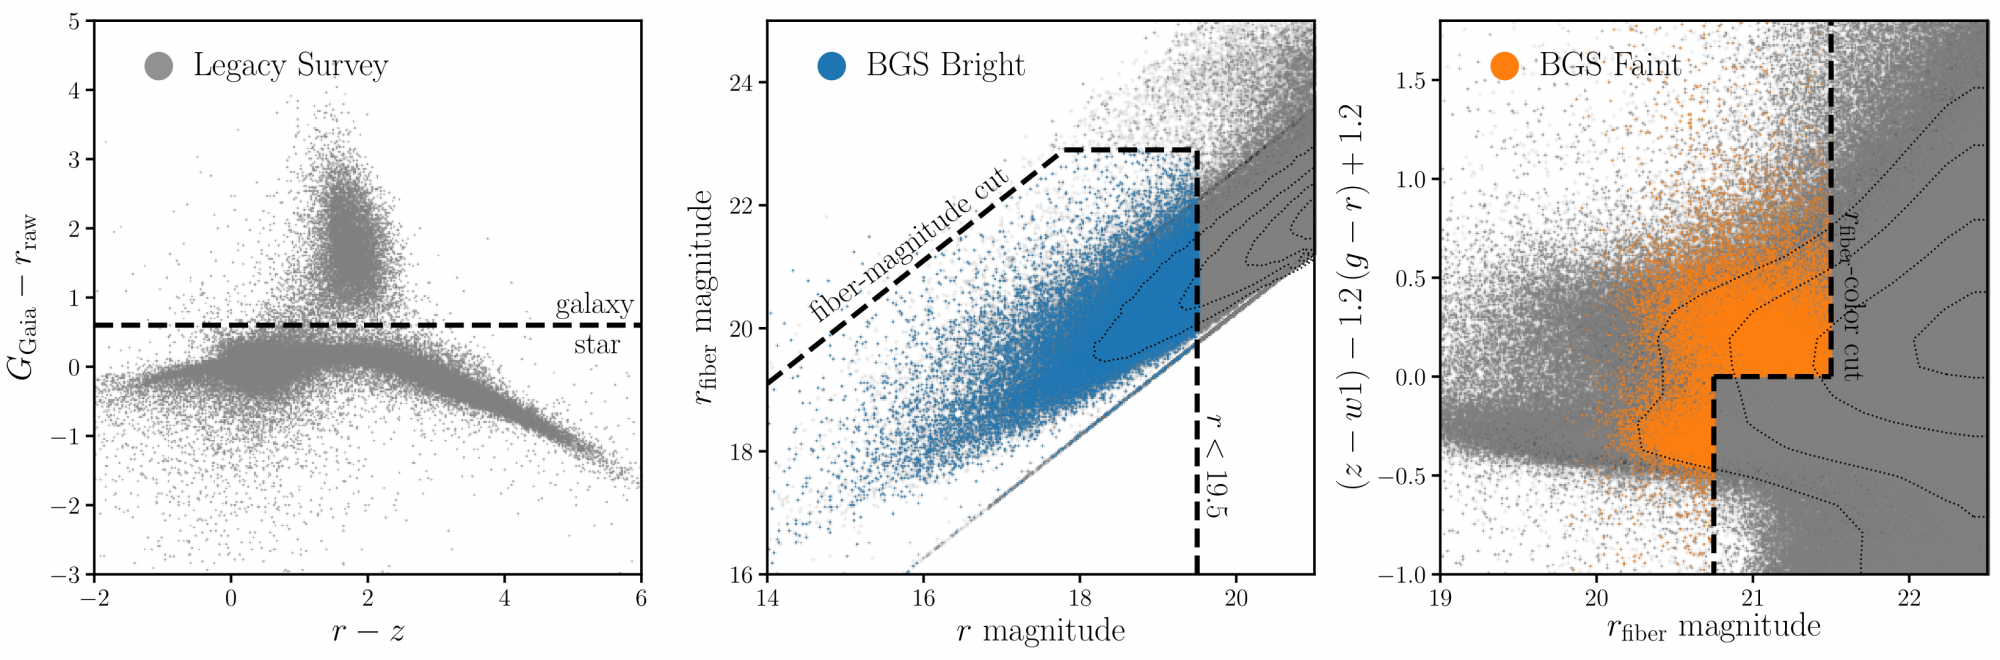 A bal oldali ábra azt mutatja, hogyan válnak el a galaxisok és csillagok a színtérben, középen és jobbra a spektroszkópiai mérésekhez kijelölt fényes galaxis felmérés (BGS) alcsoportok láthatók